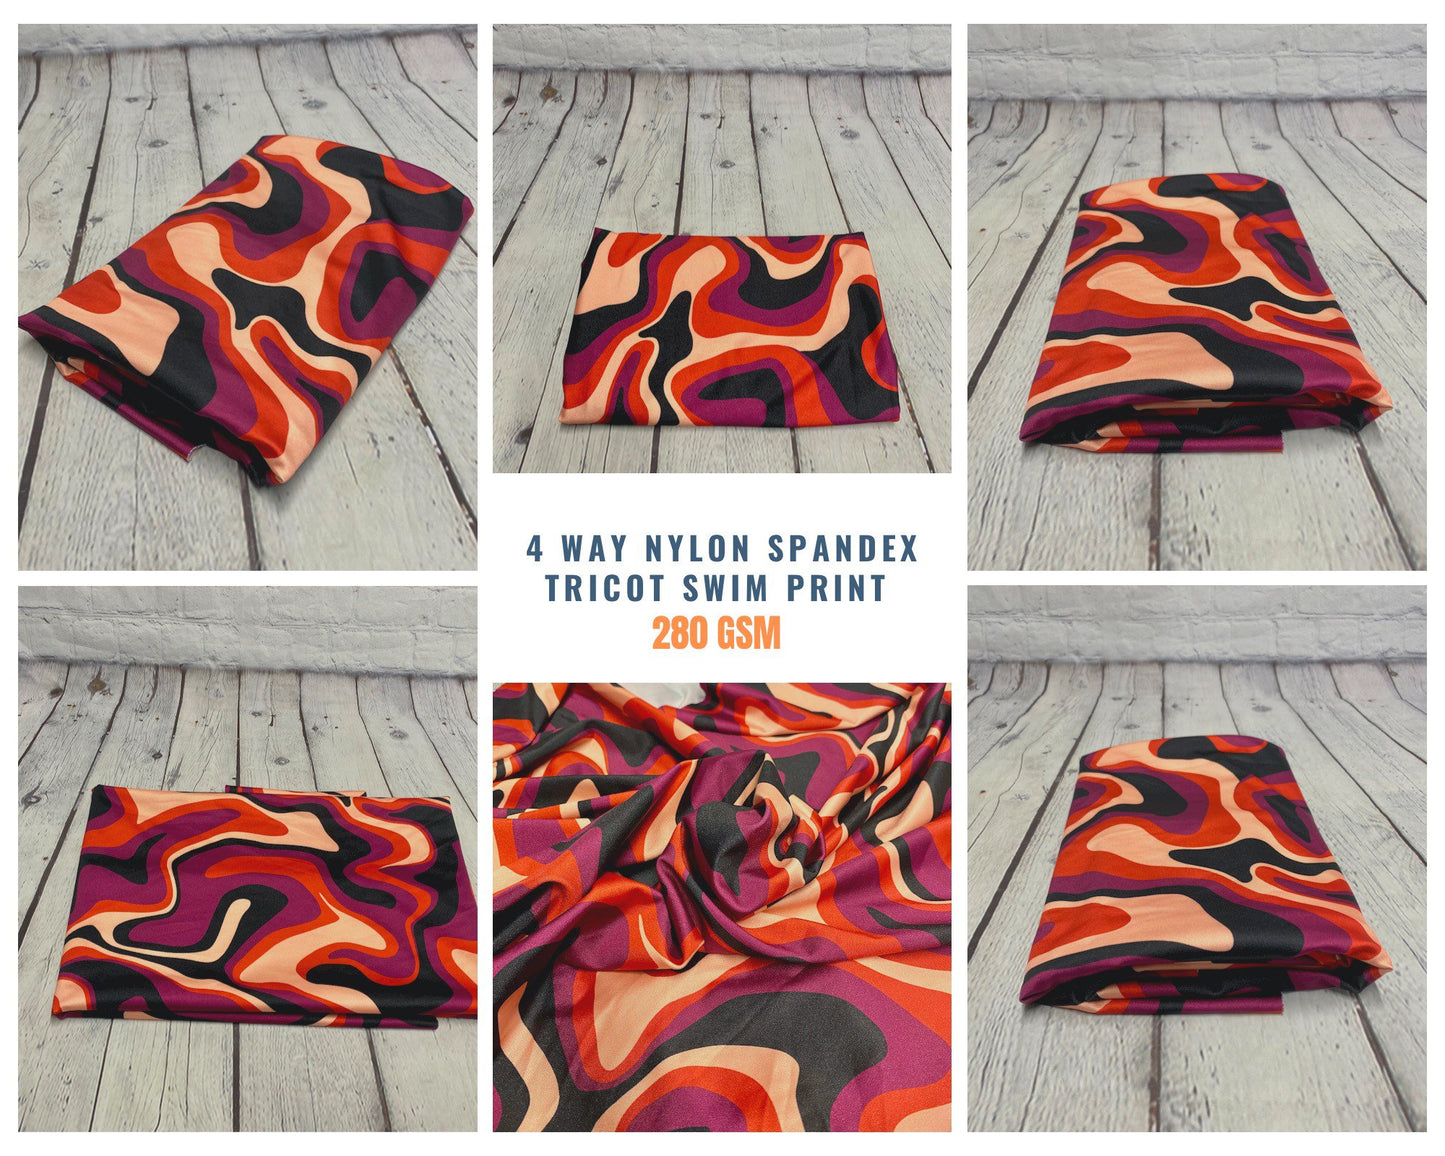 4 Way Stretch Print Nylon Spandex Fabric By The Yard Tricot Swim Wear Bikini Active Wear Wave Hazy Groovy Red Print 280 GSM